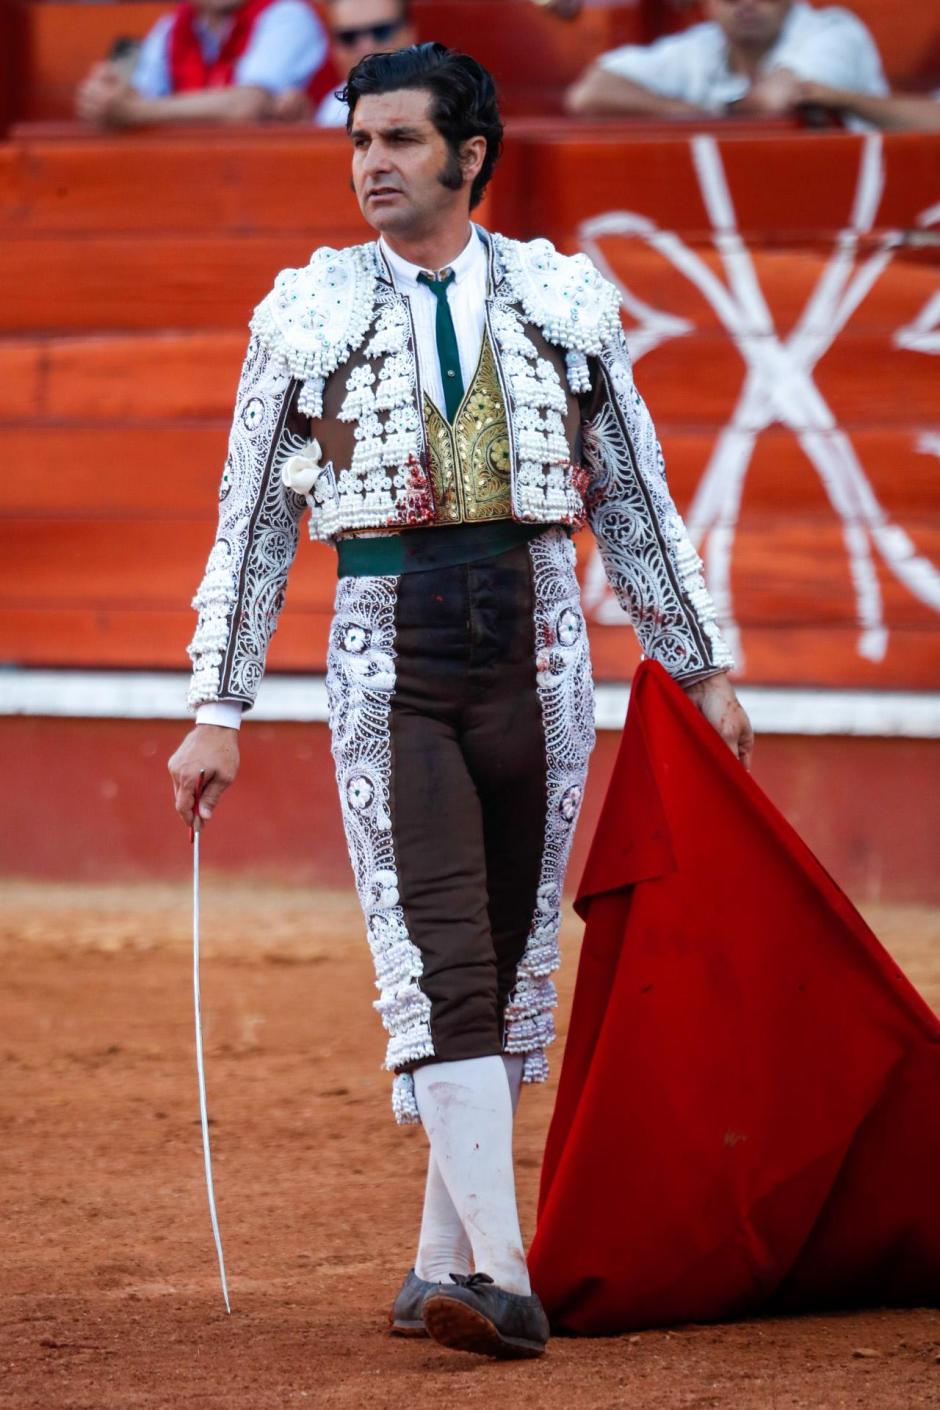 El torero Morante de la Puebla durante una corrida de toros en Aranjuez. May 29, 2022